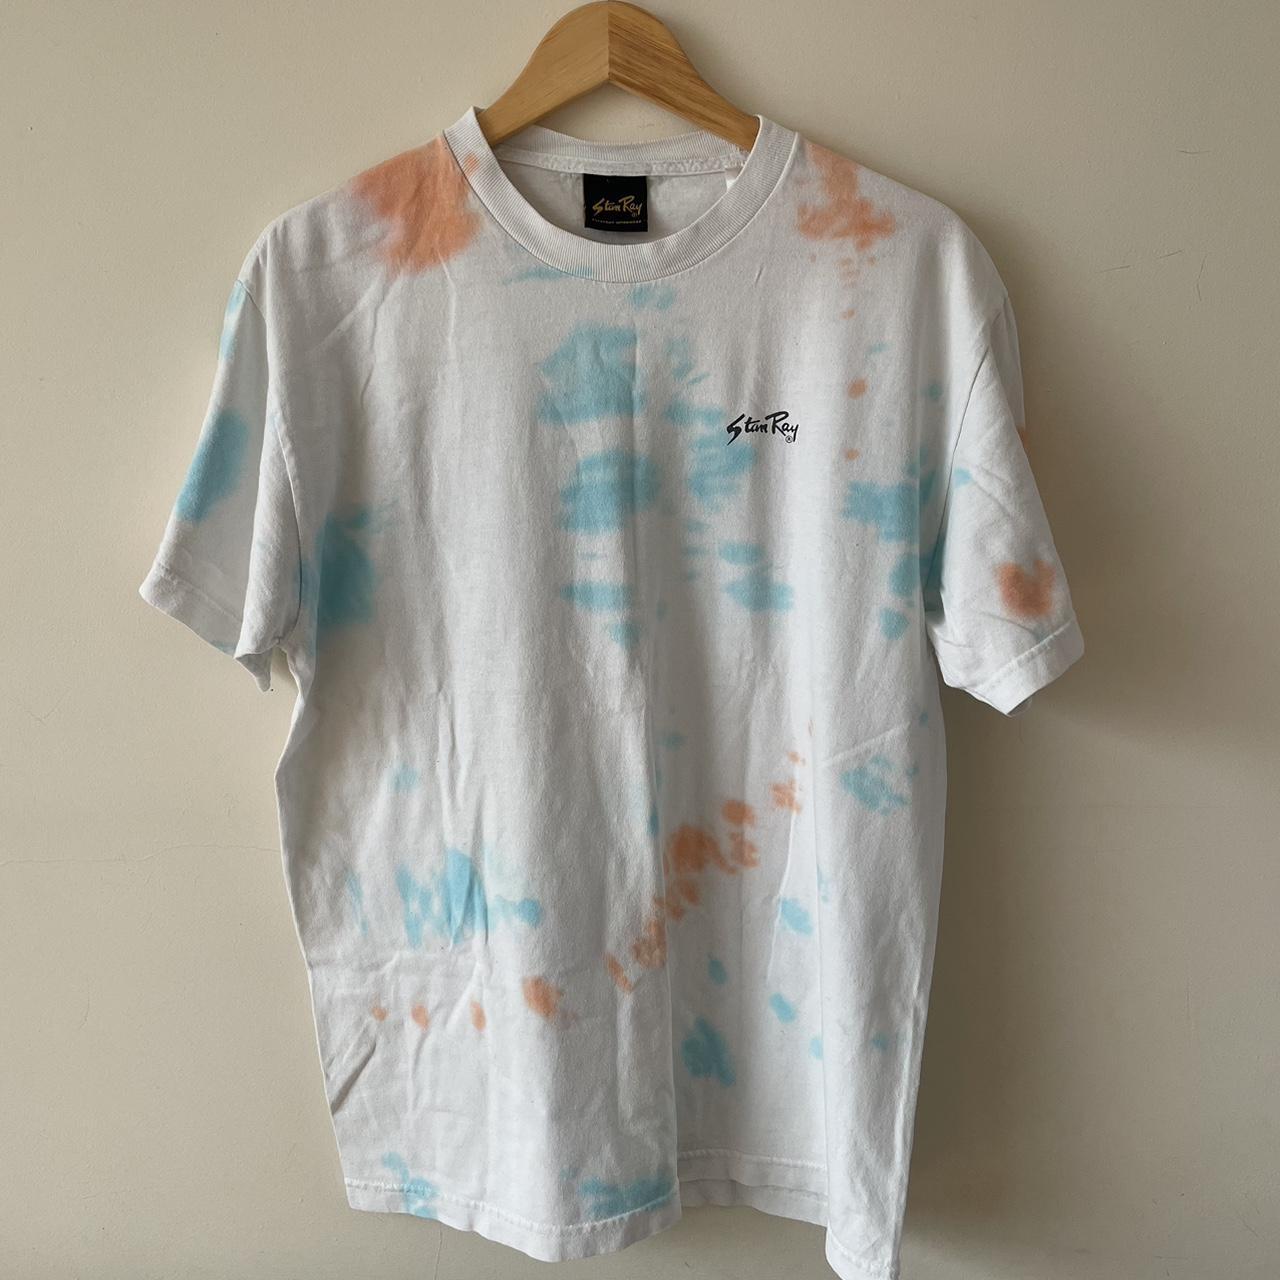 Tye Dye Florida Marlins Shirt Size men's M , perfect - Depop